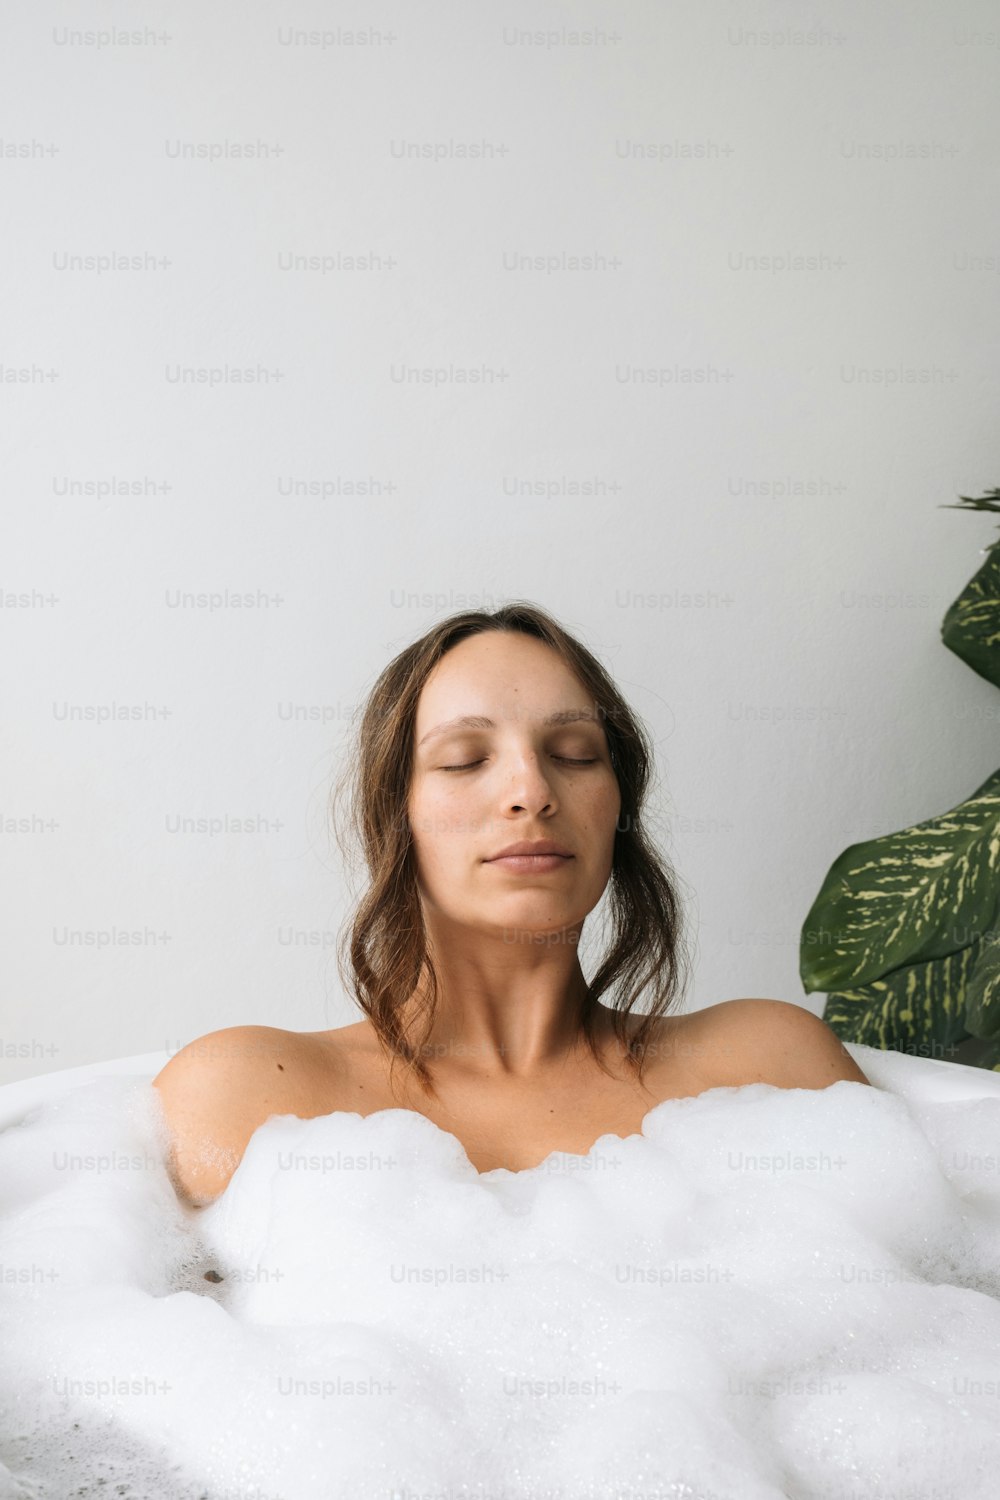 Una mujer sentada en un baño de burbujas con los ojos cerrados